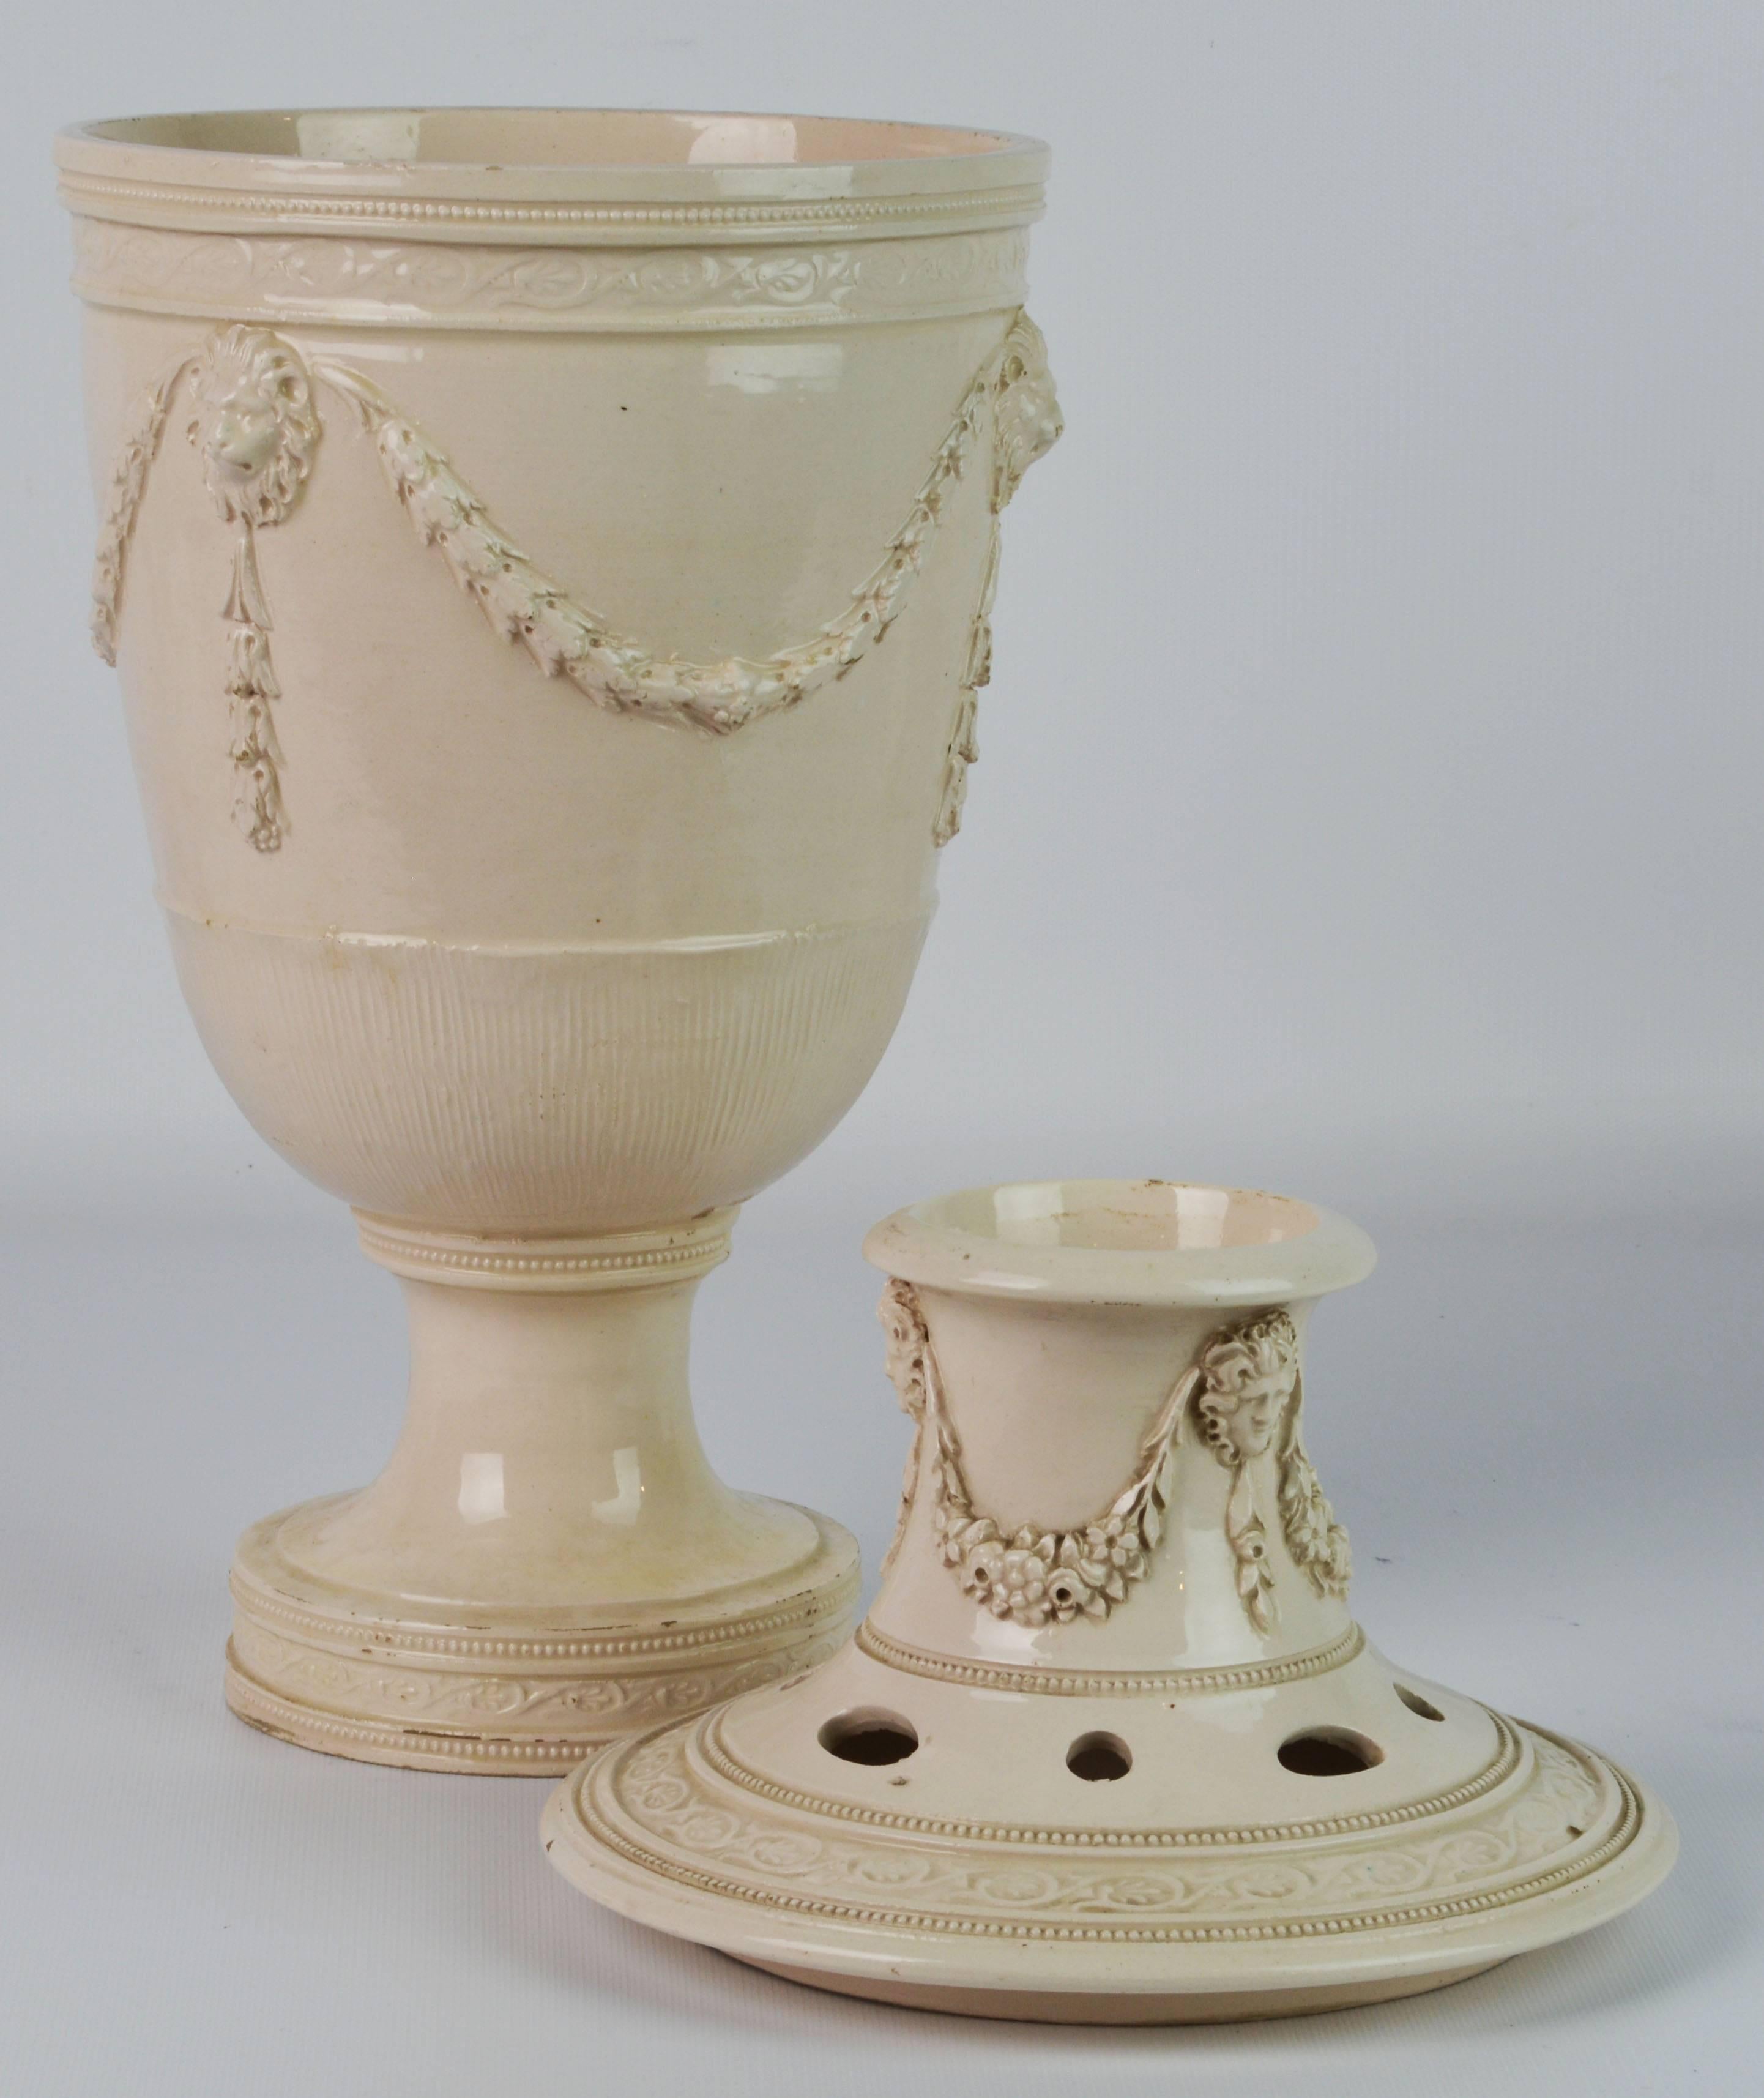 Ceramic Rare 18th Century Leeds Cream Ware Covered Potpourri Jar or Urn